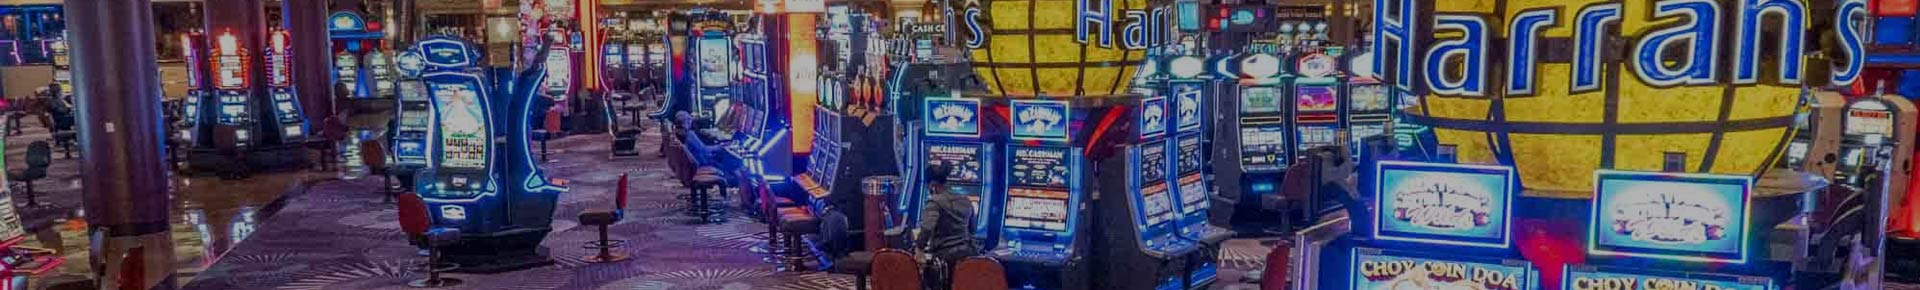 Harrah's Resort & Casino Atlantic City